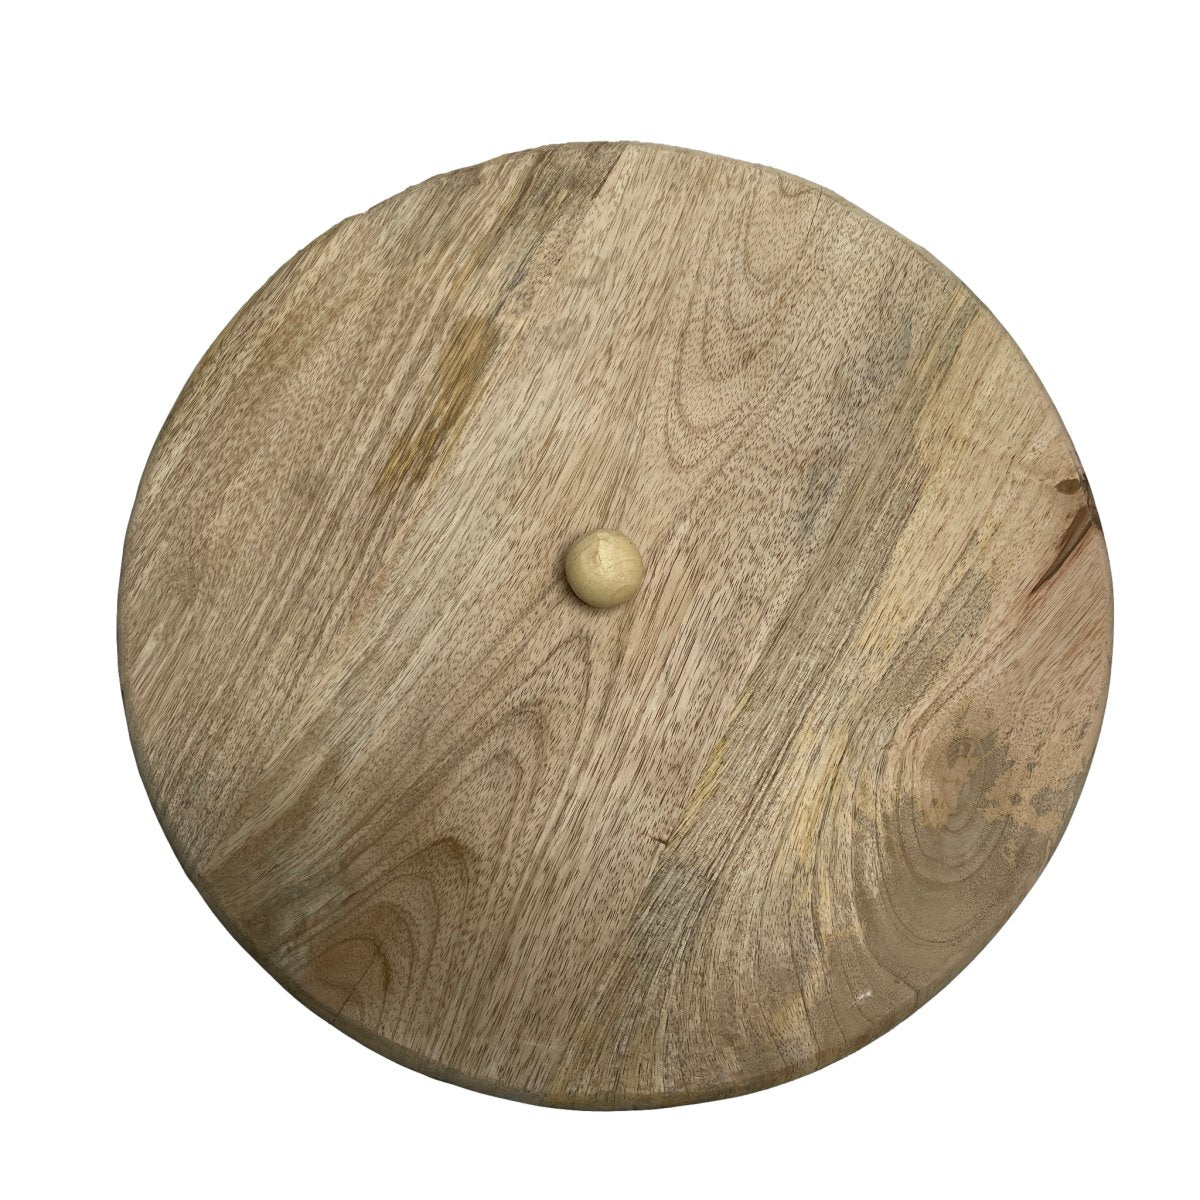 Grand panier en rotin avec couvercle en bois de manguier - Rustic Furniture Outlet